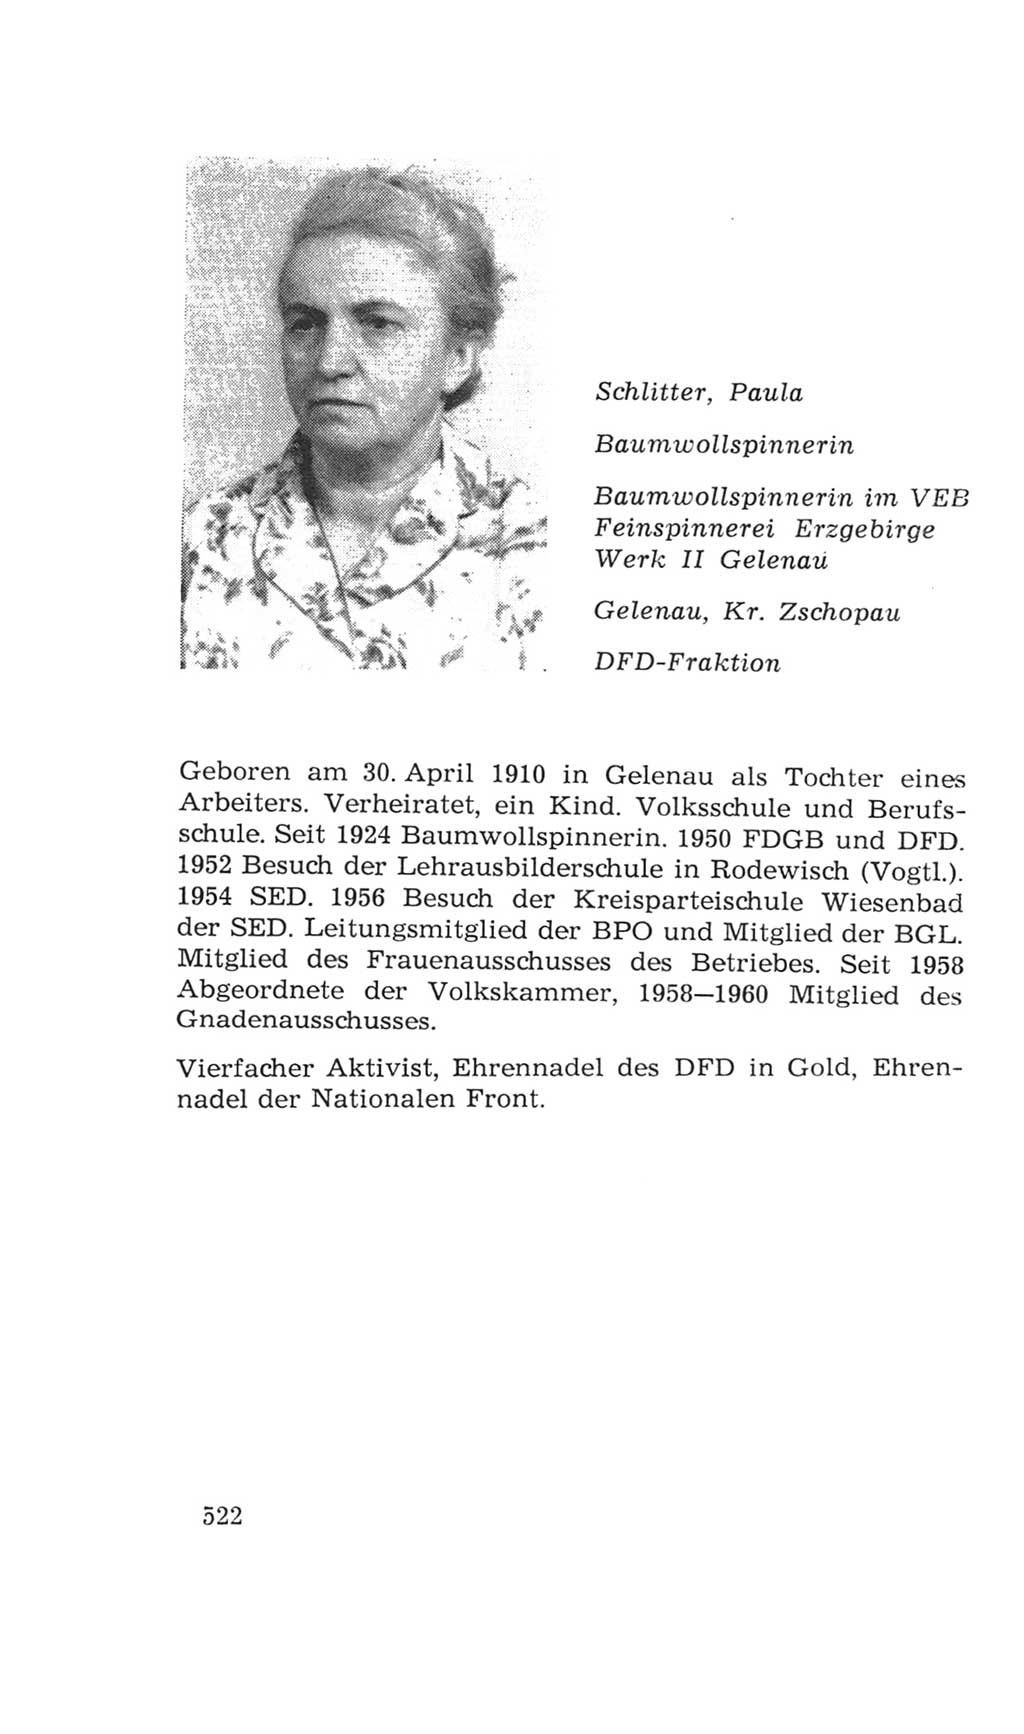 Volkskammer (VK) der Deutschen Demokratischen Republik (DDR), 4. Wahlperiode 1963-1967, Seite 522 (VK. DDR 4. WP. 1963-1967, S. 522)